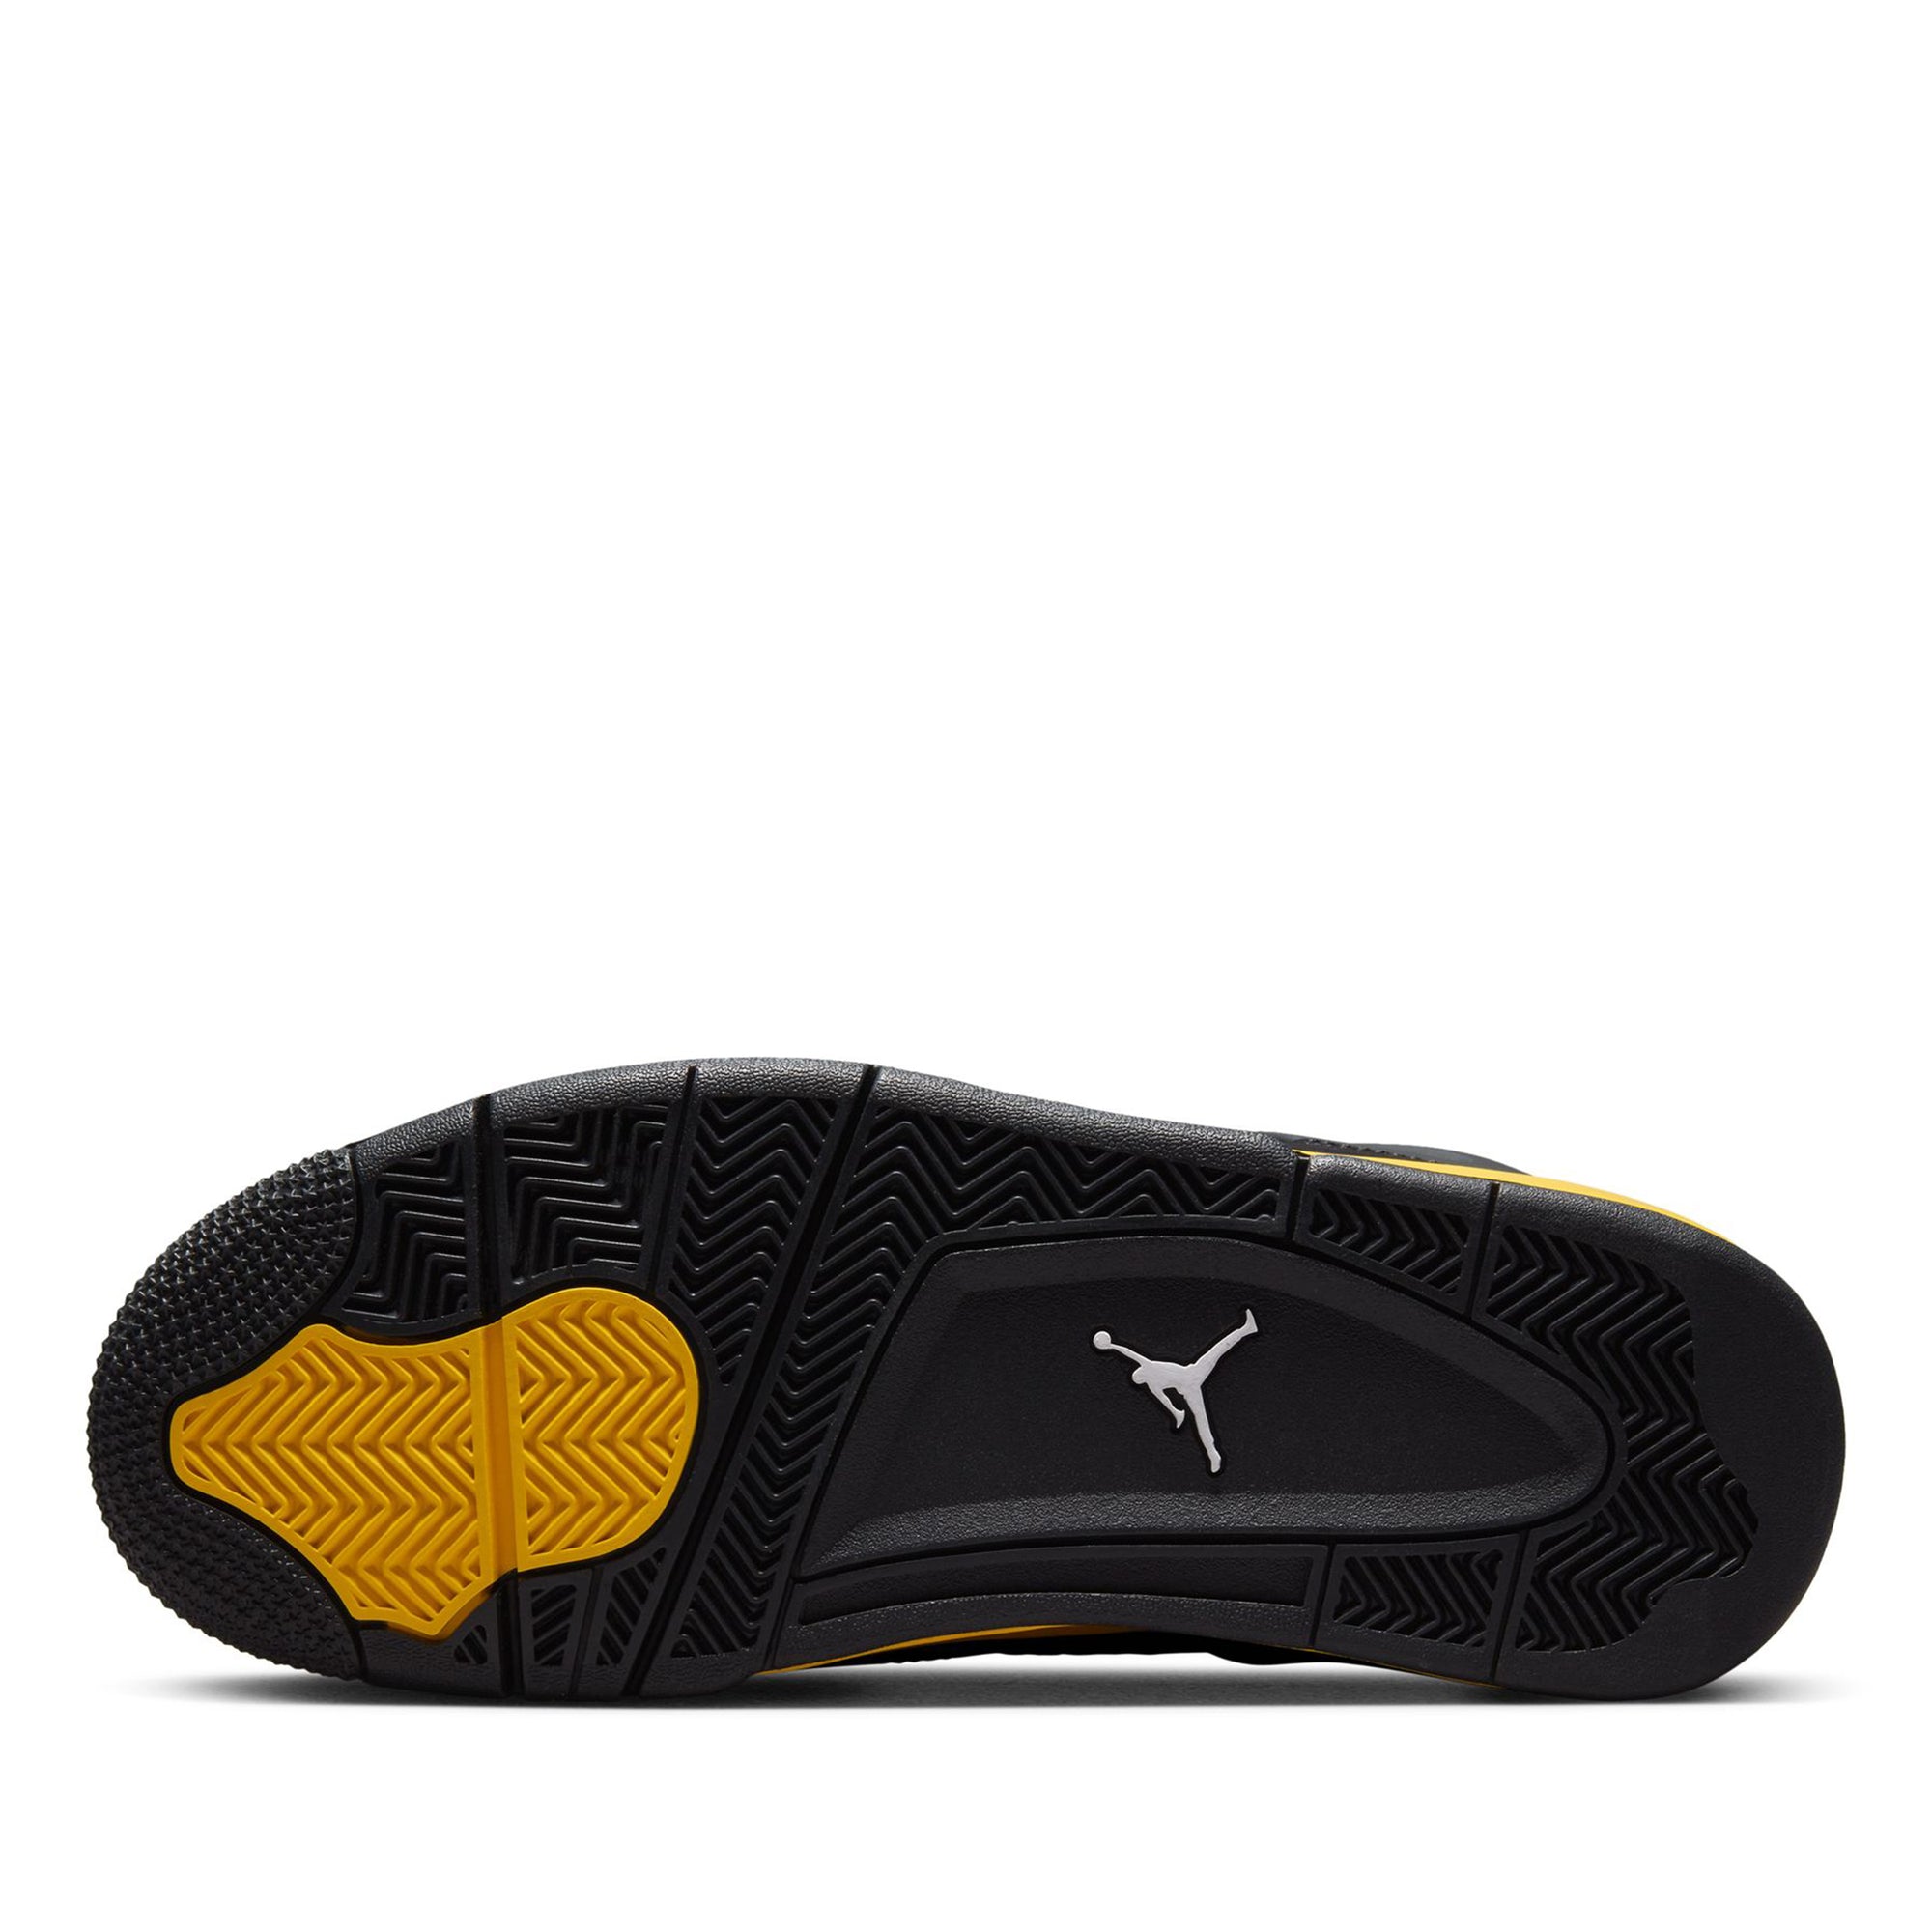 Air Jordan 4 Retro “Oreo”